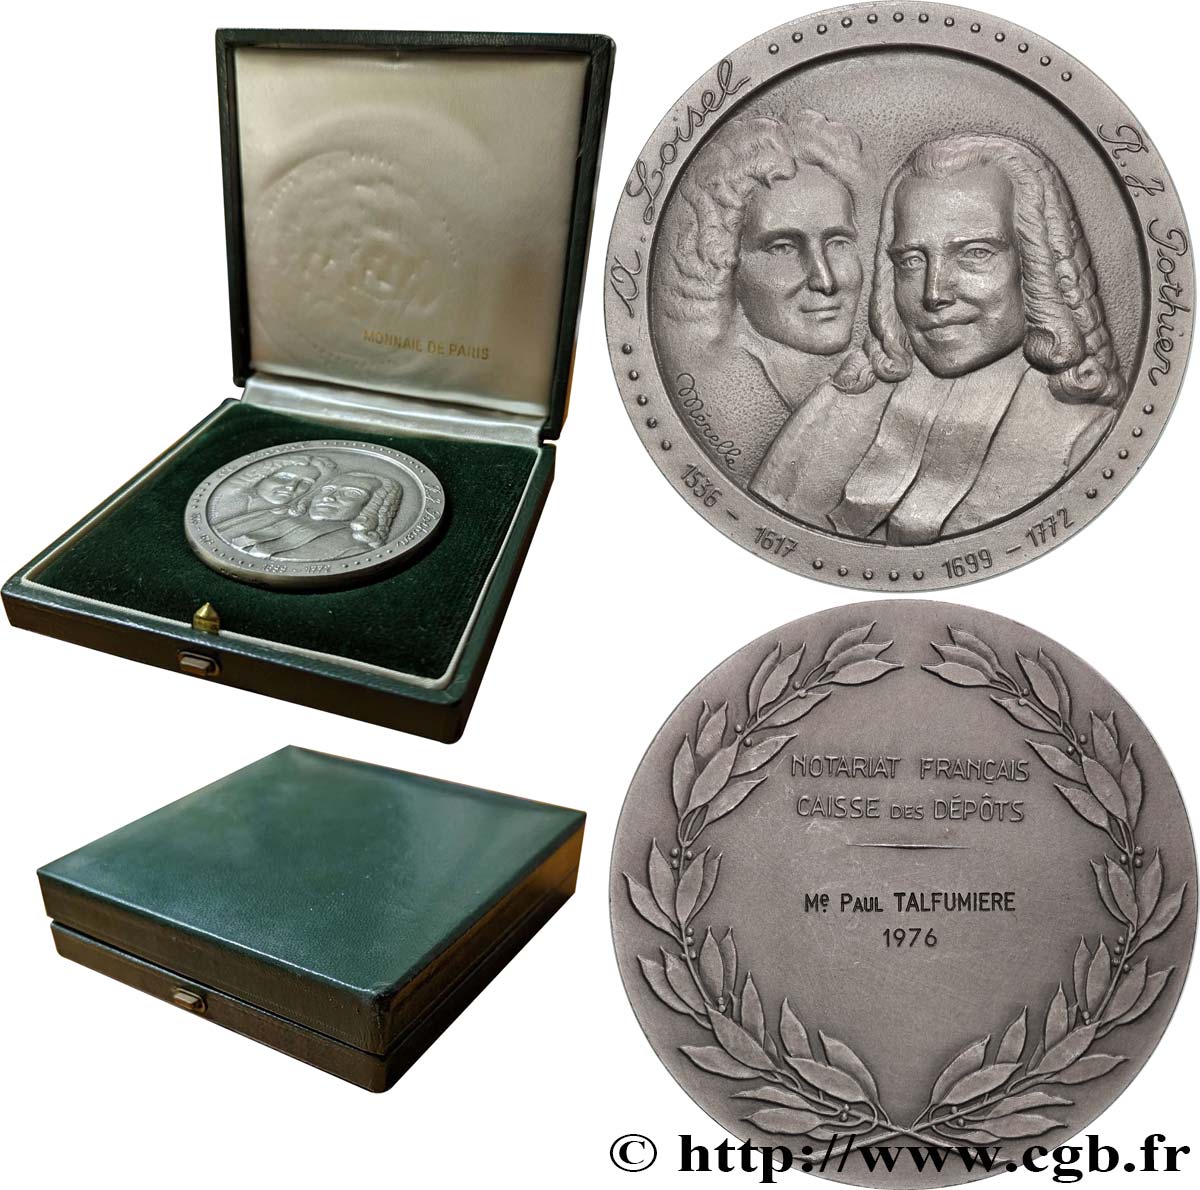 20TH CENTURY NOTARIES Médaille, Loisel et Pothier, Caisse des dépôts AU